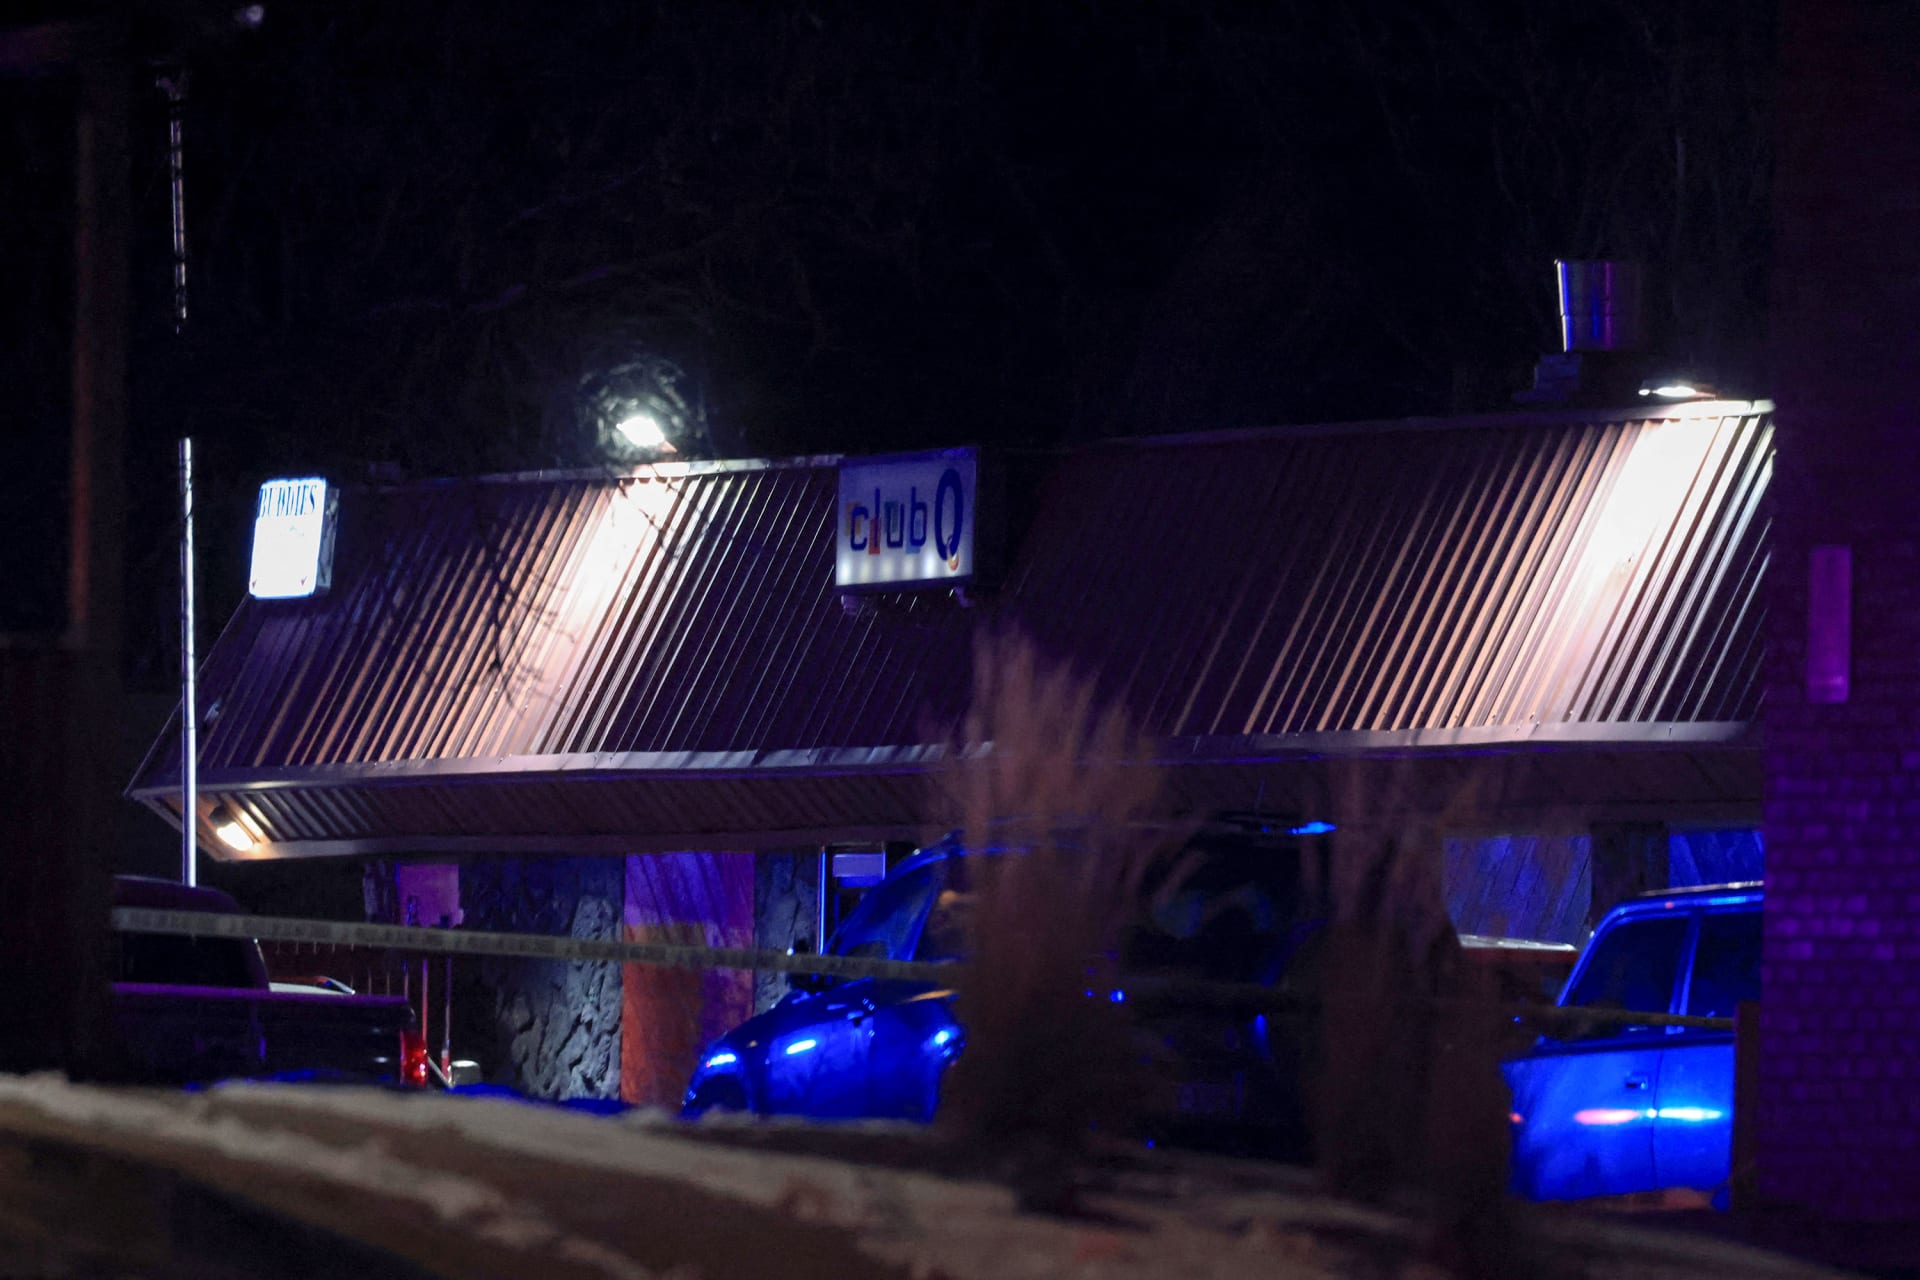 Útočník střílel v nočním podniku Club Q, ve kterém se podle médií schází členové komunity LGBT.